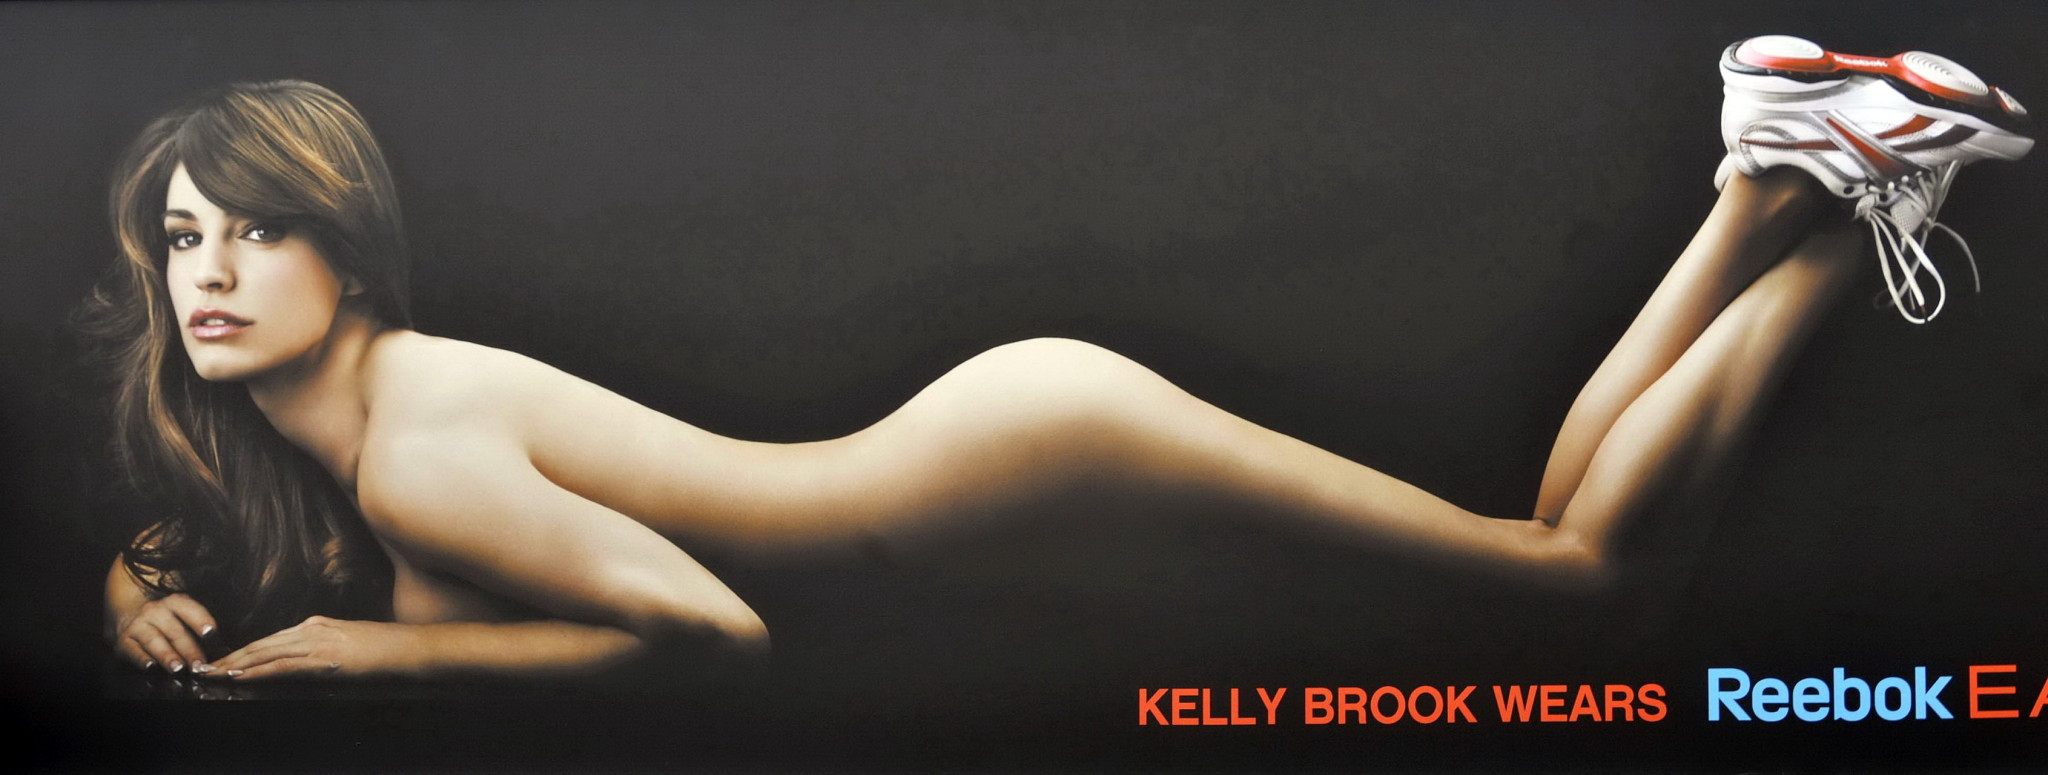 Kelly Brook che mostra il suo culo nudo nella campagna promozionale della reebok easytone
 #75338205